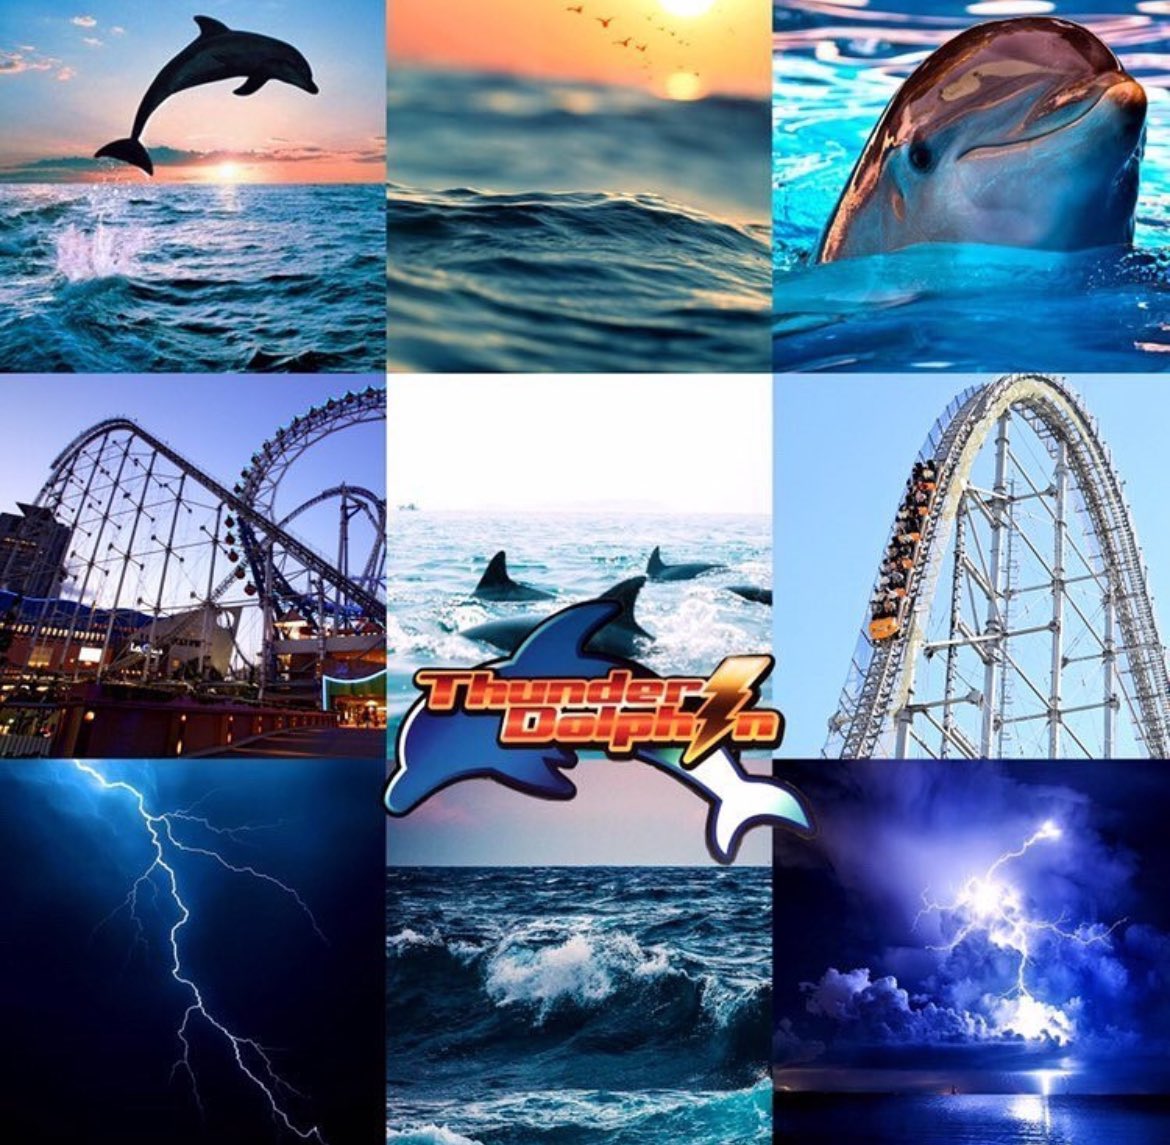 Thunder Dolphin moodboard 🐬

#thunderdolphin #tokyodomecity